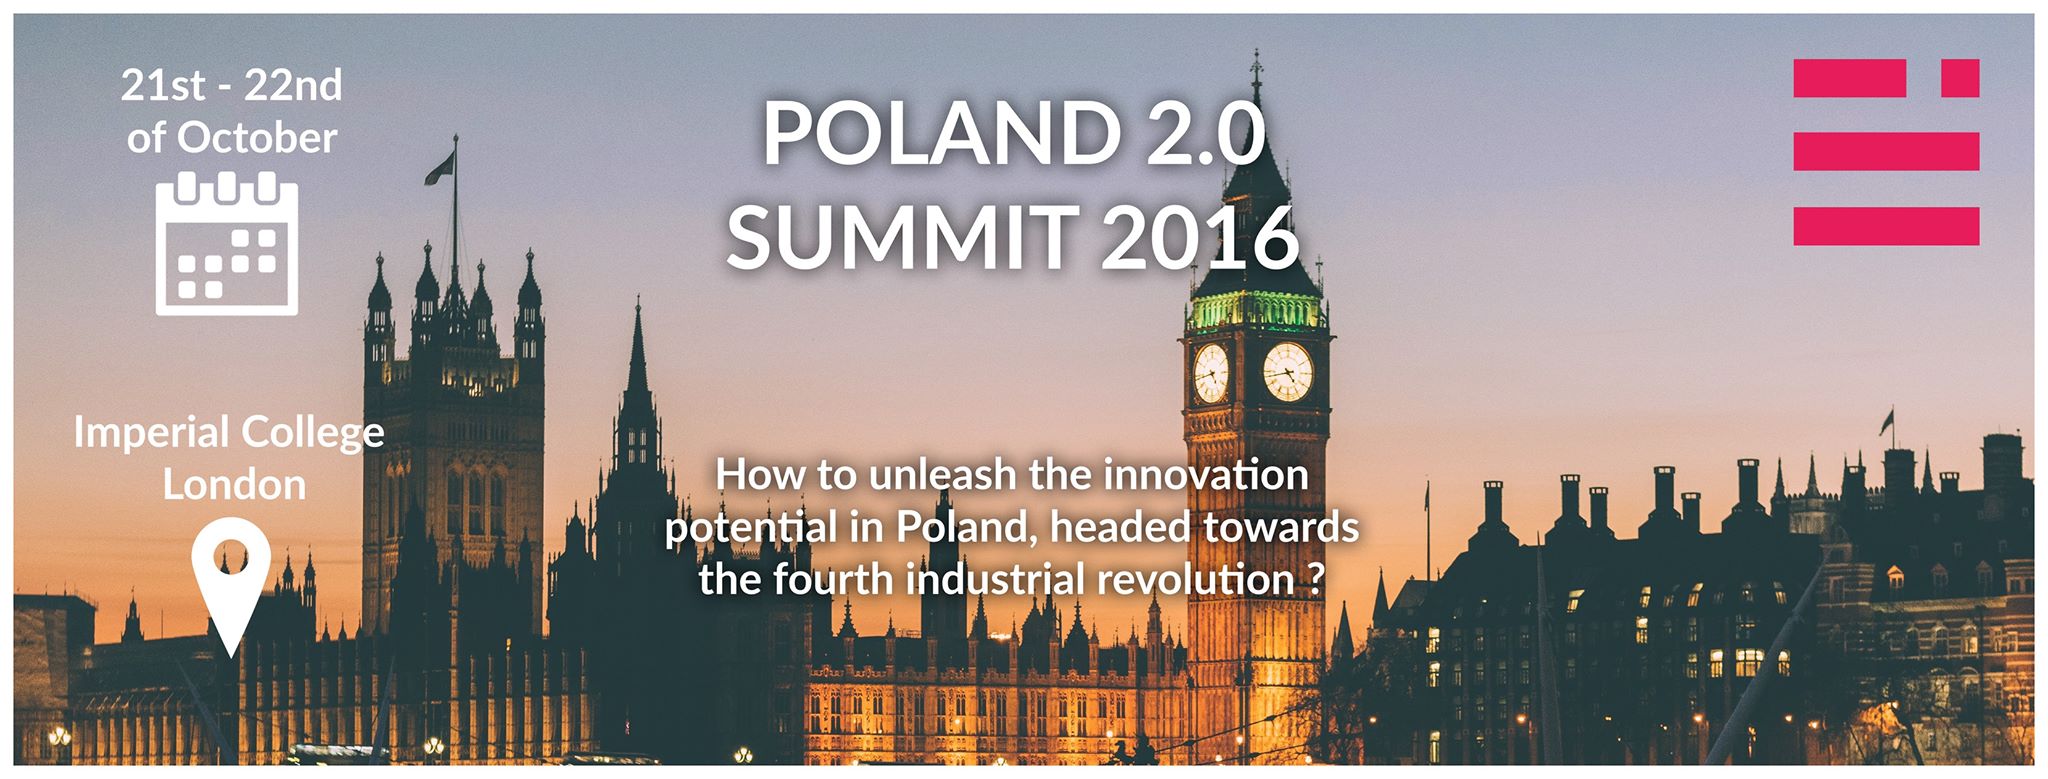 Poland 2.0 Summit